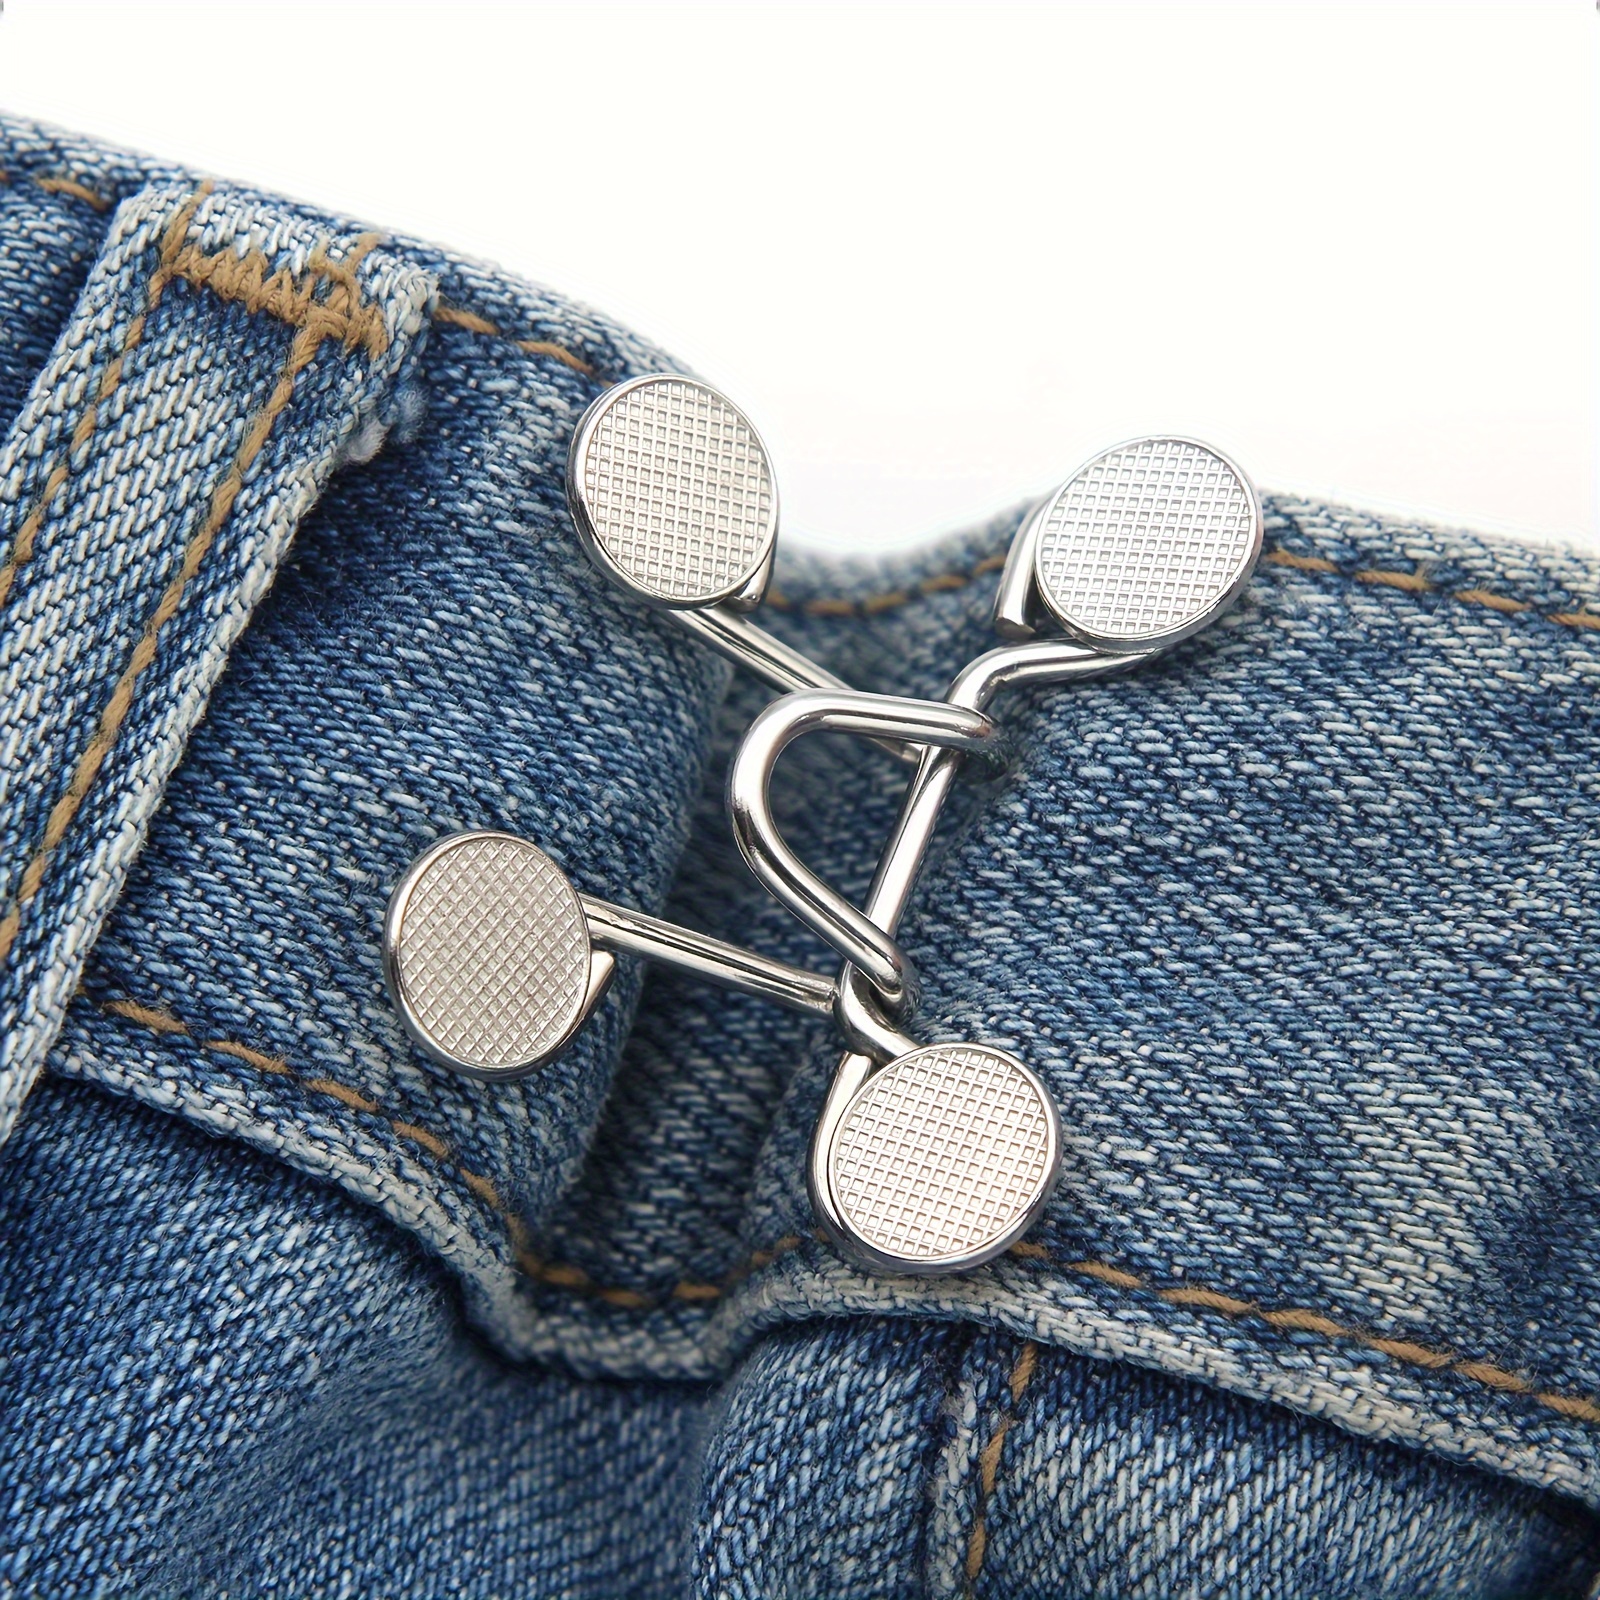 Waist Cincher Artifact Jeans Waist Change Small Fixed Buckle - Temu